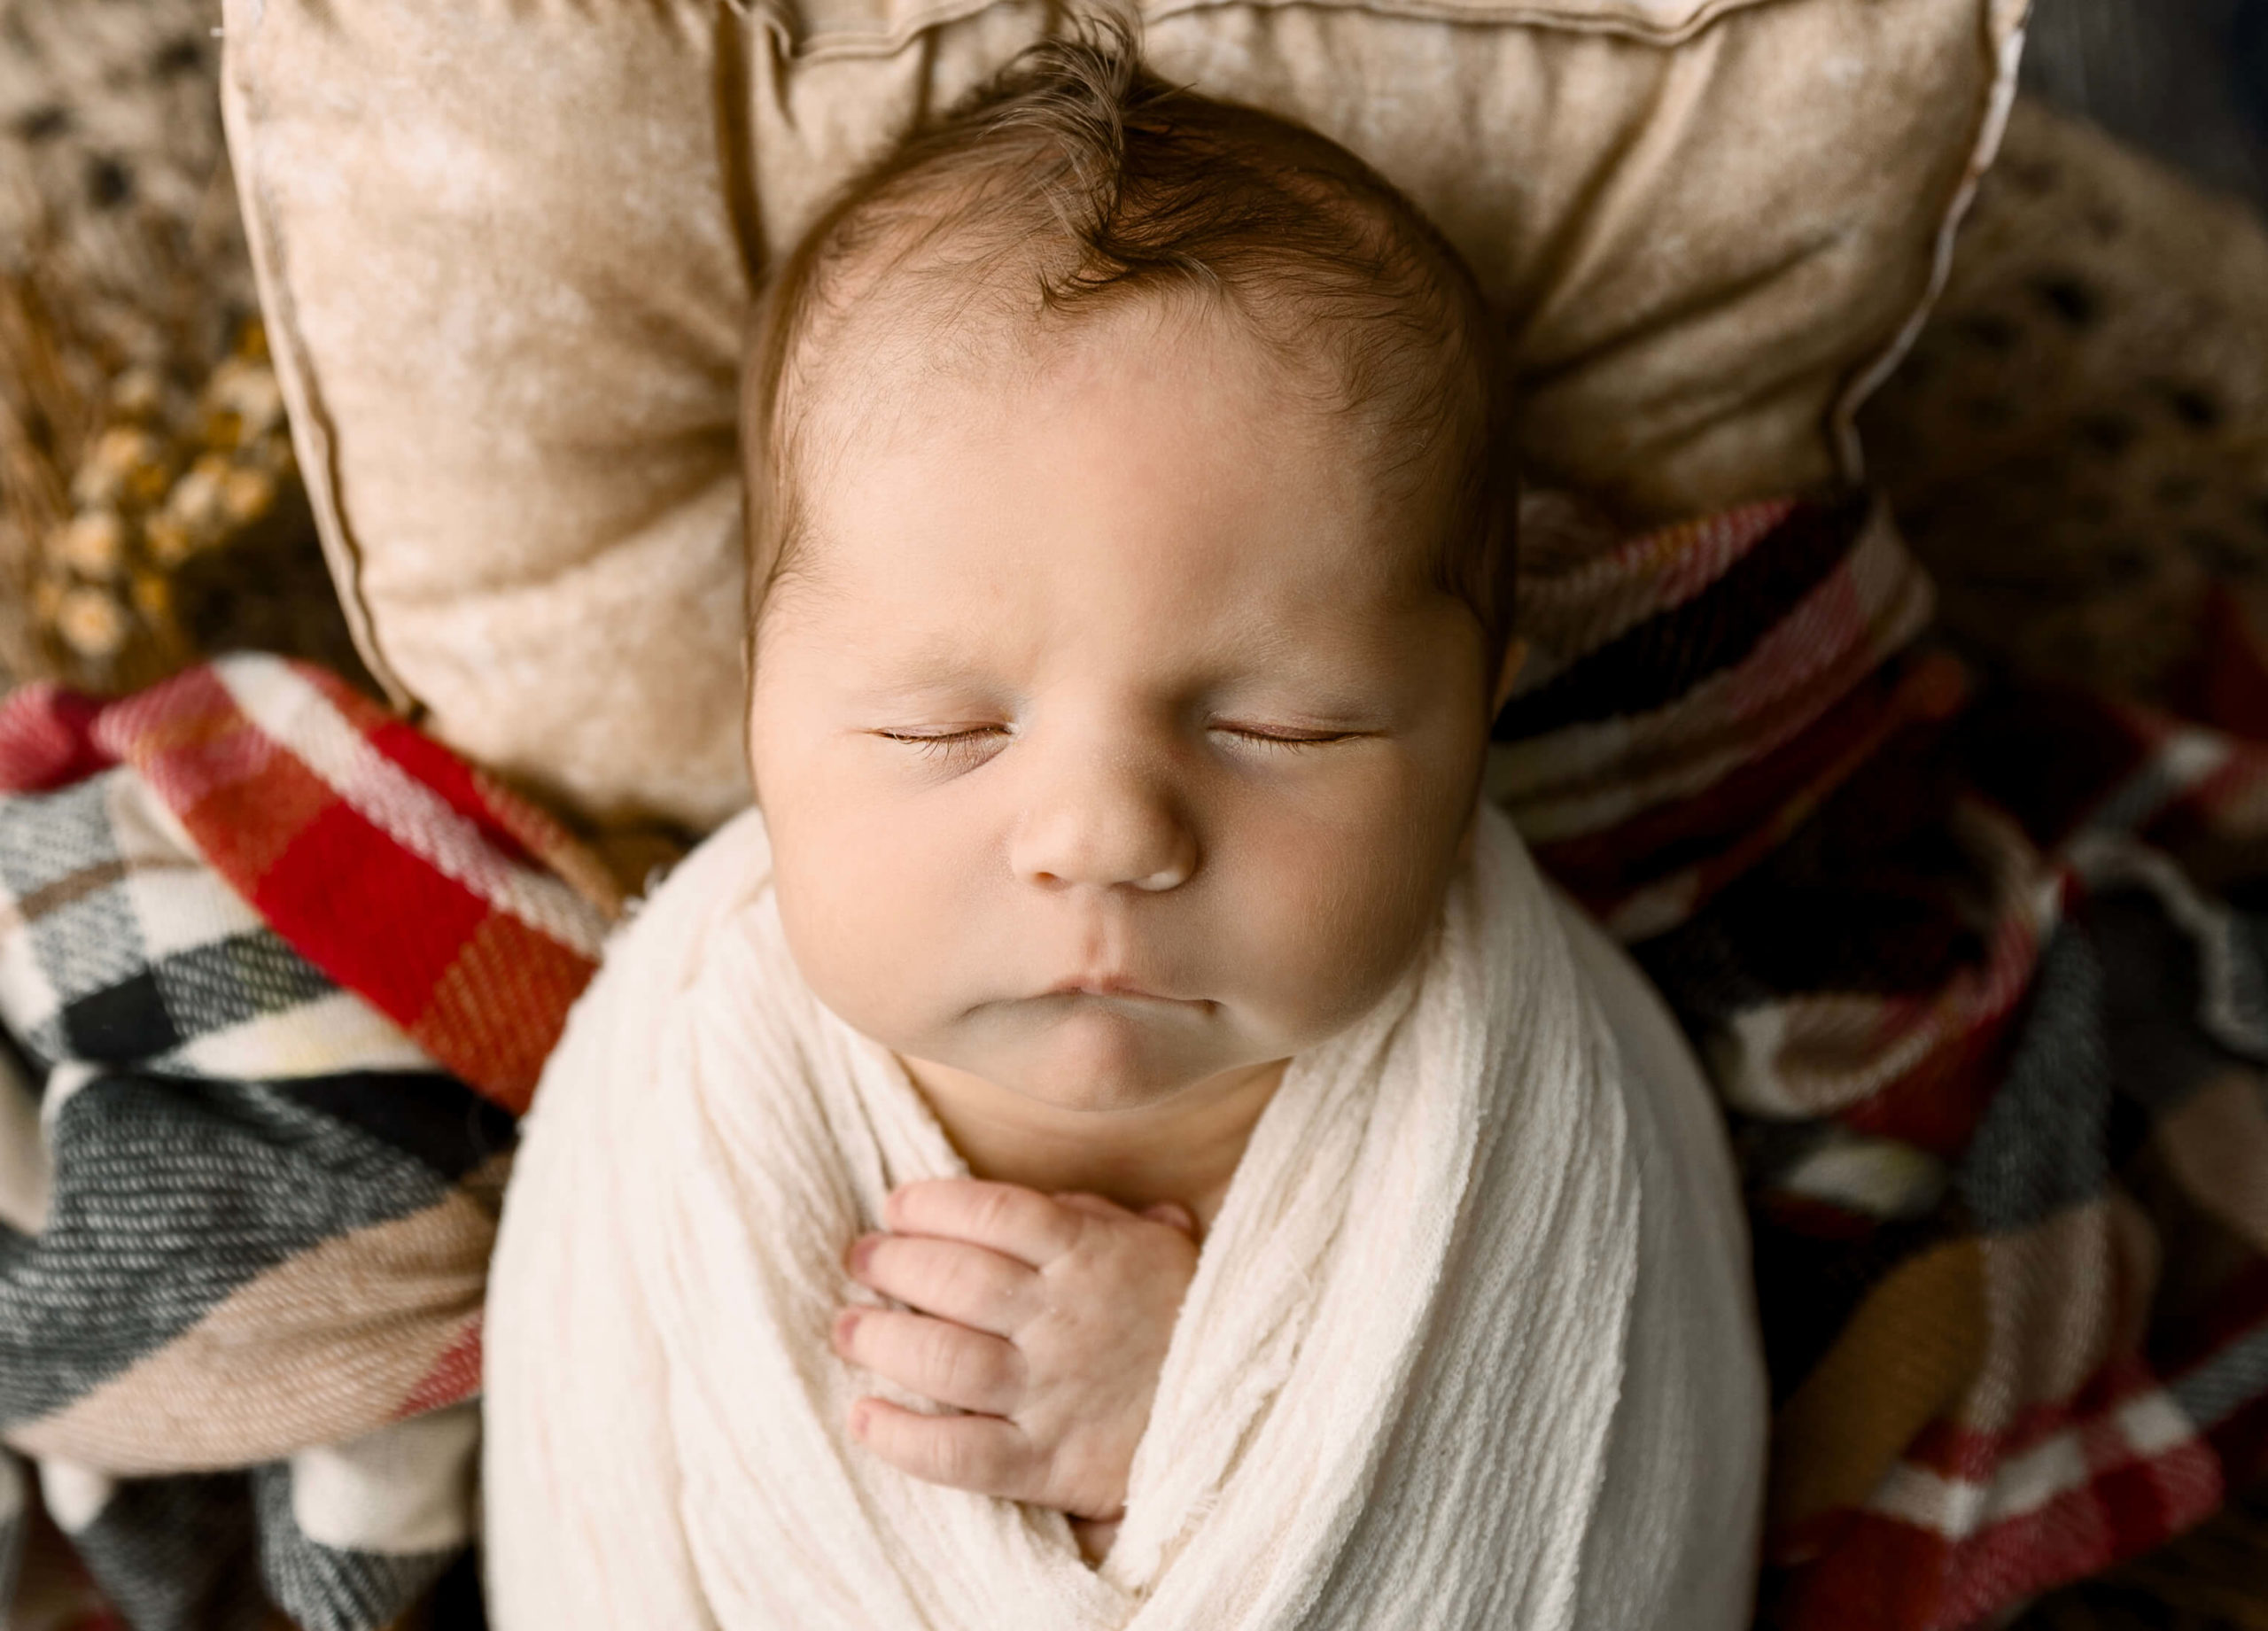 Newborn baby boy laying on a plaid blanket